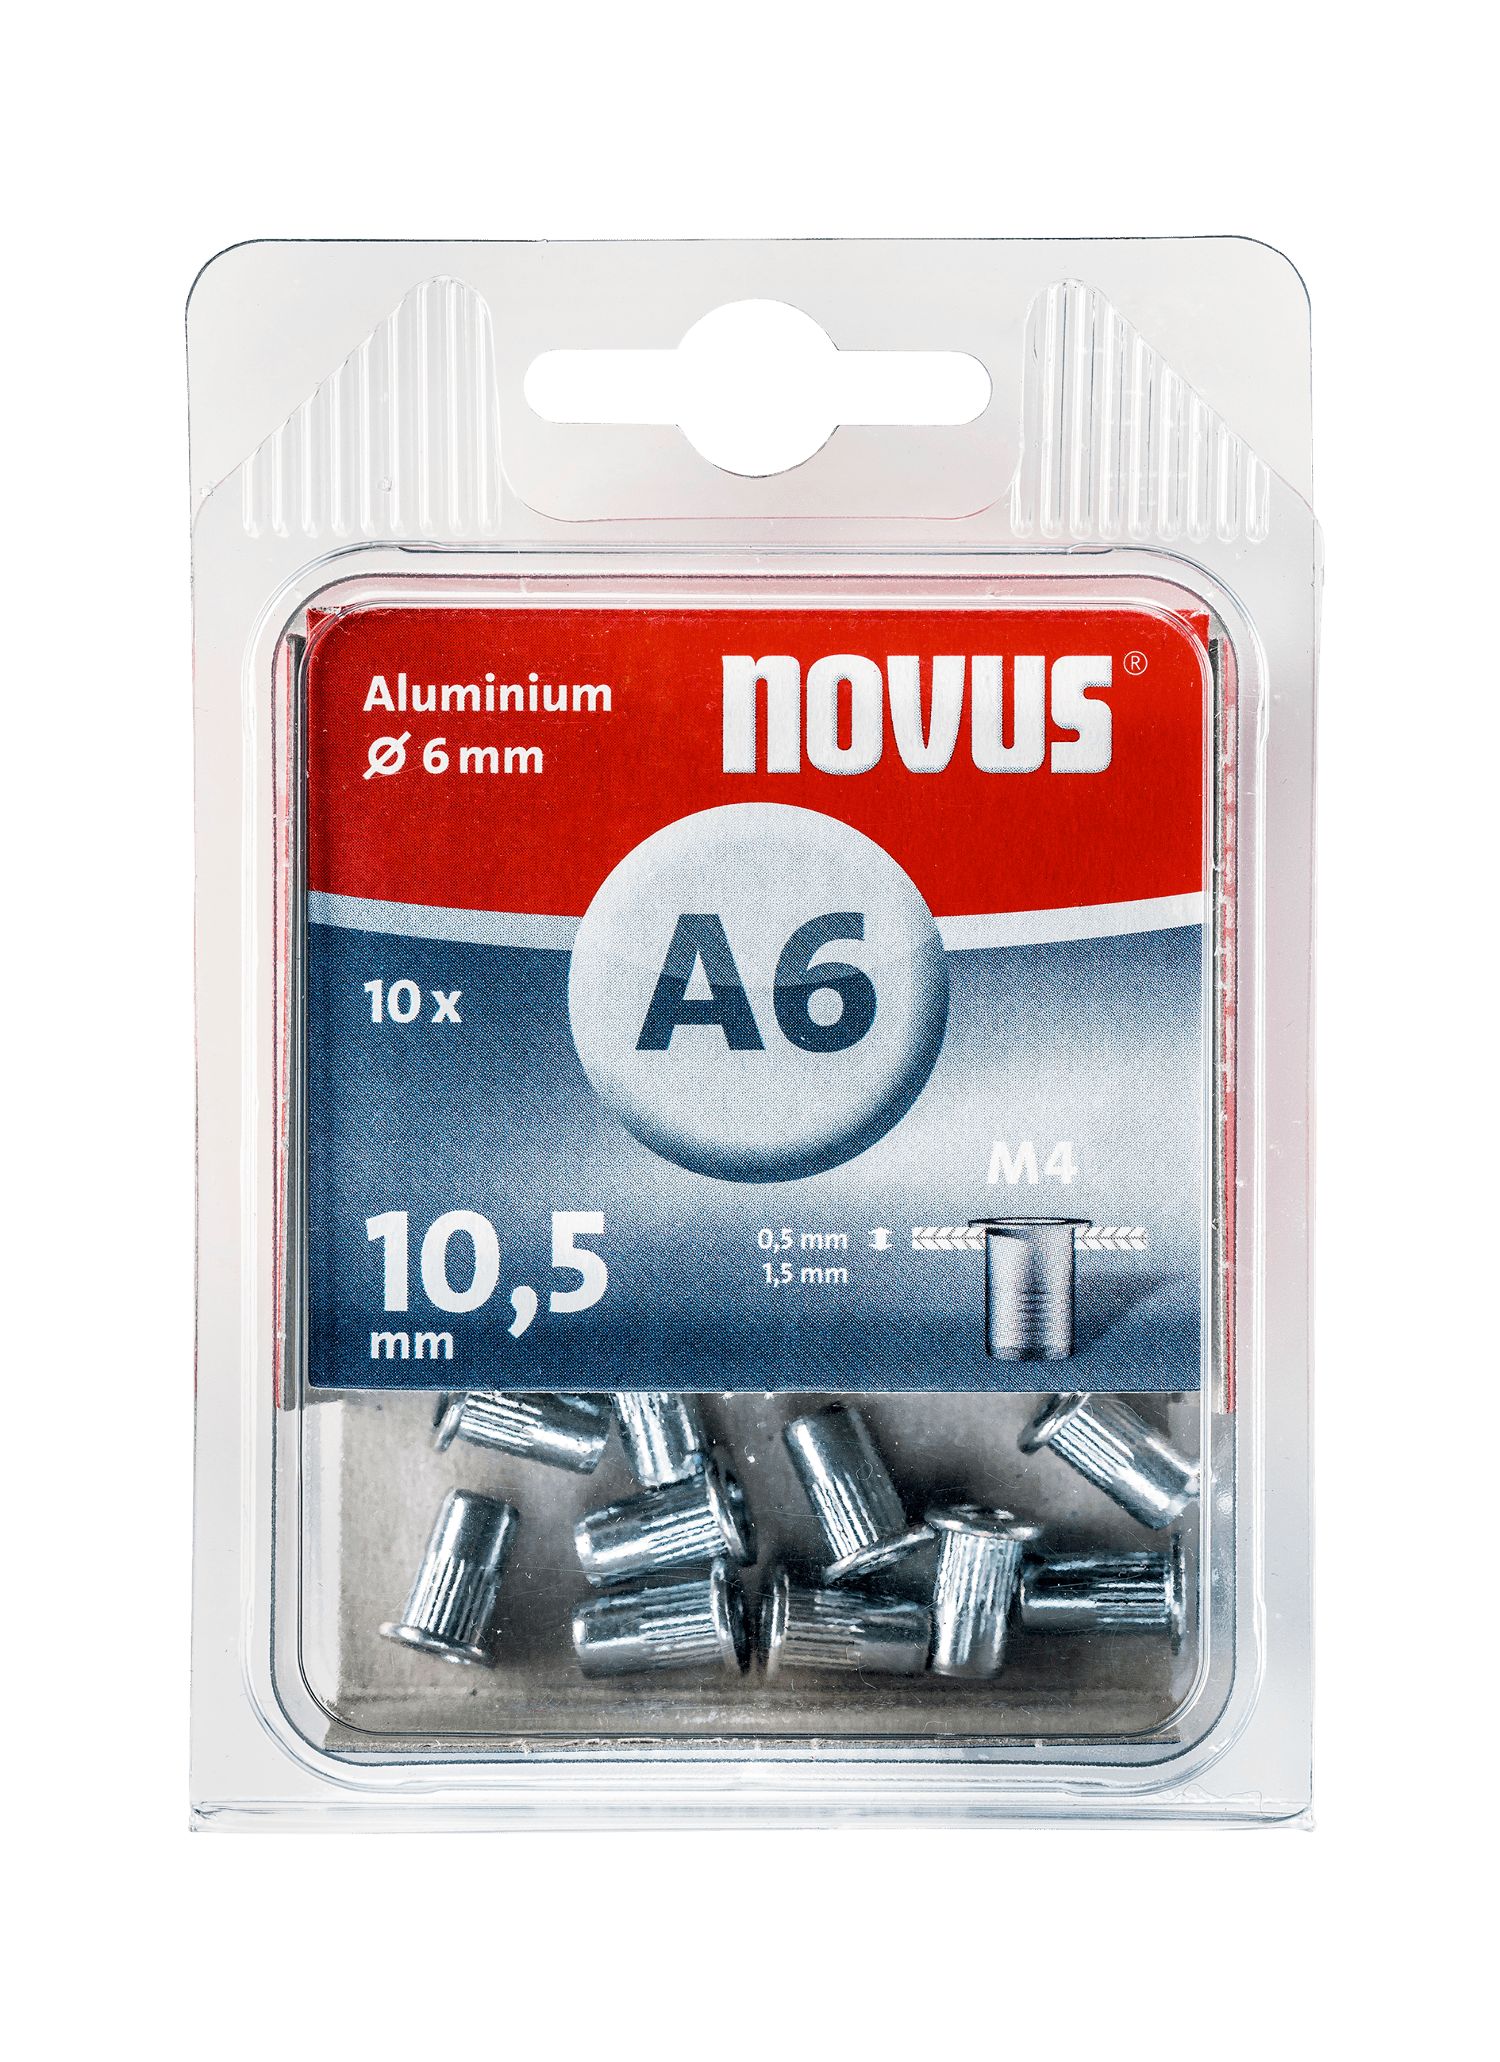 NOVUS Aluminium rivet nut Type A6 M4